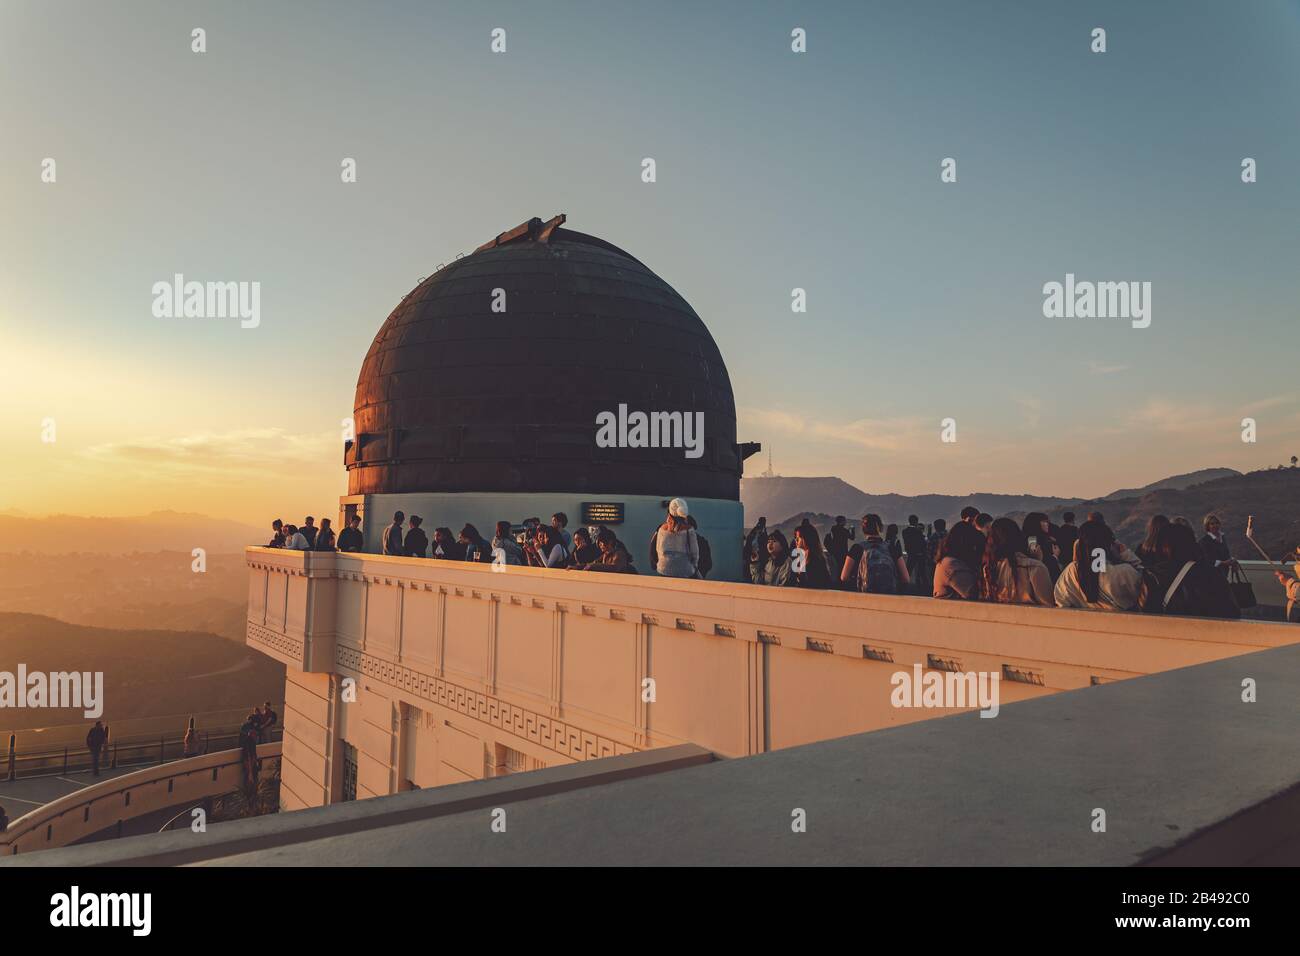 Los Angeles, Californie - 18 février 2020 : Touristes visitant l'Observatoire du parc Griffith au coucher du soleil Banque D'Images